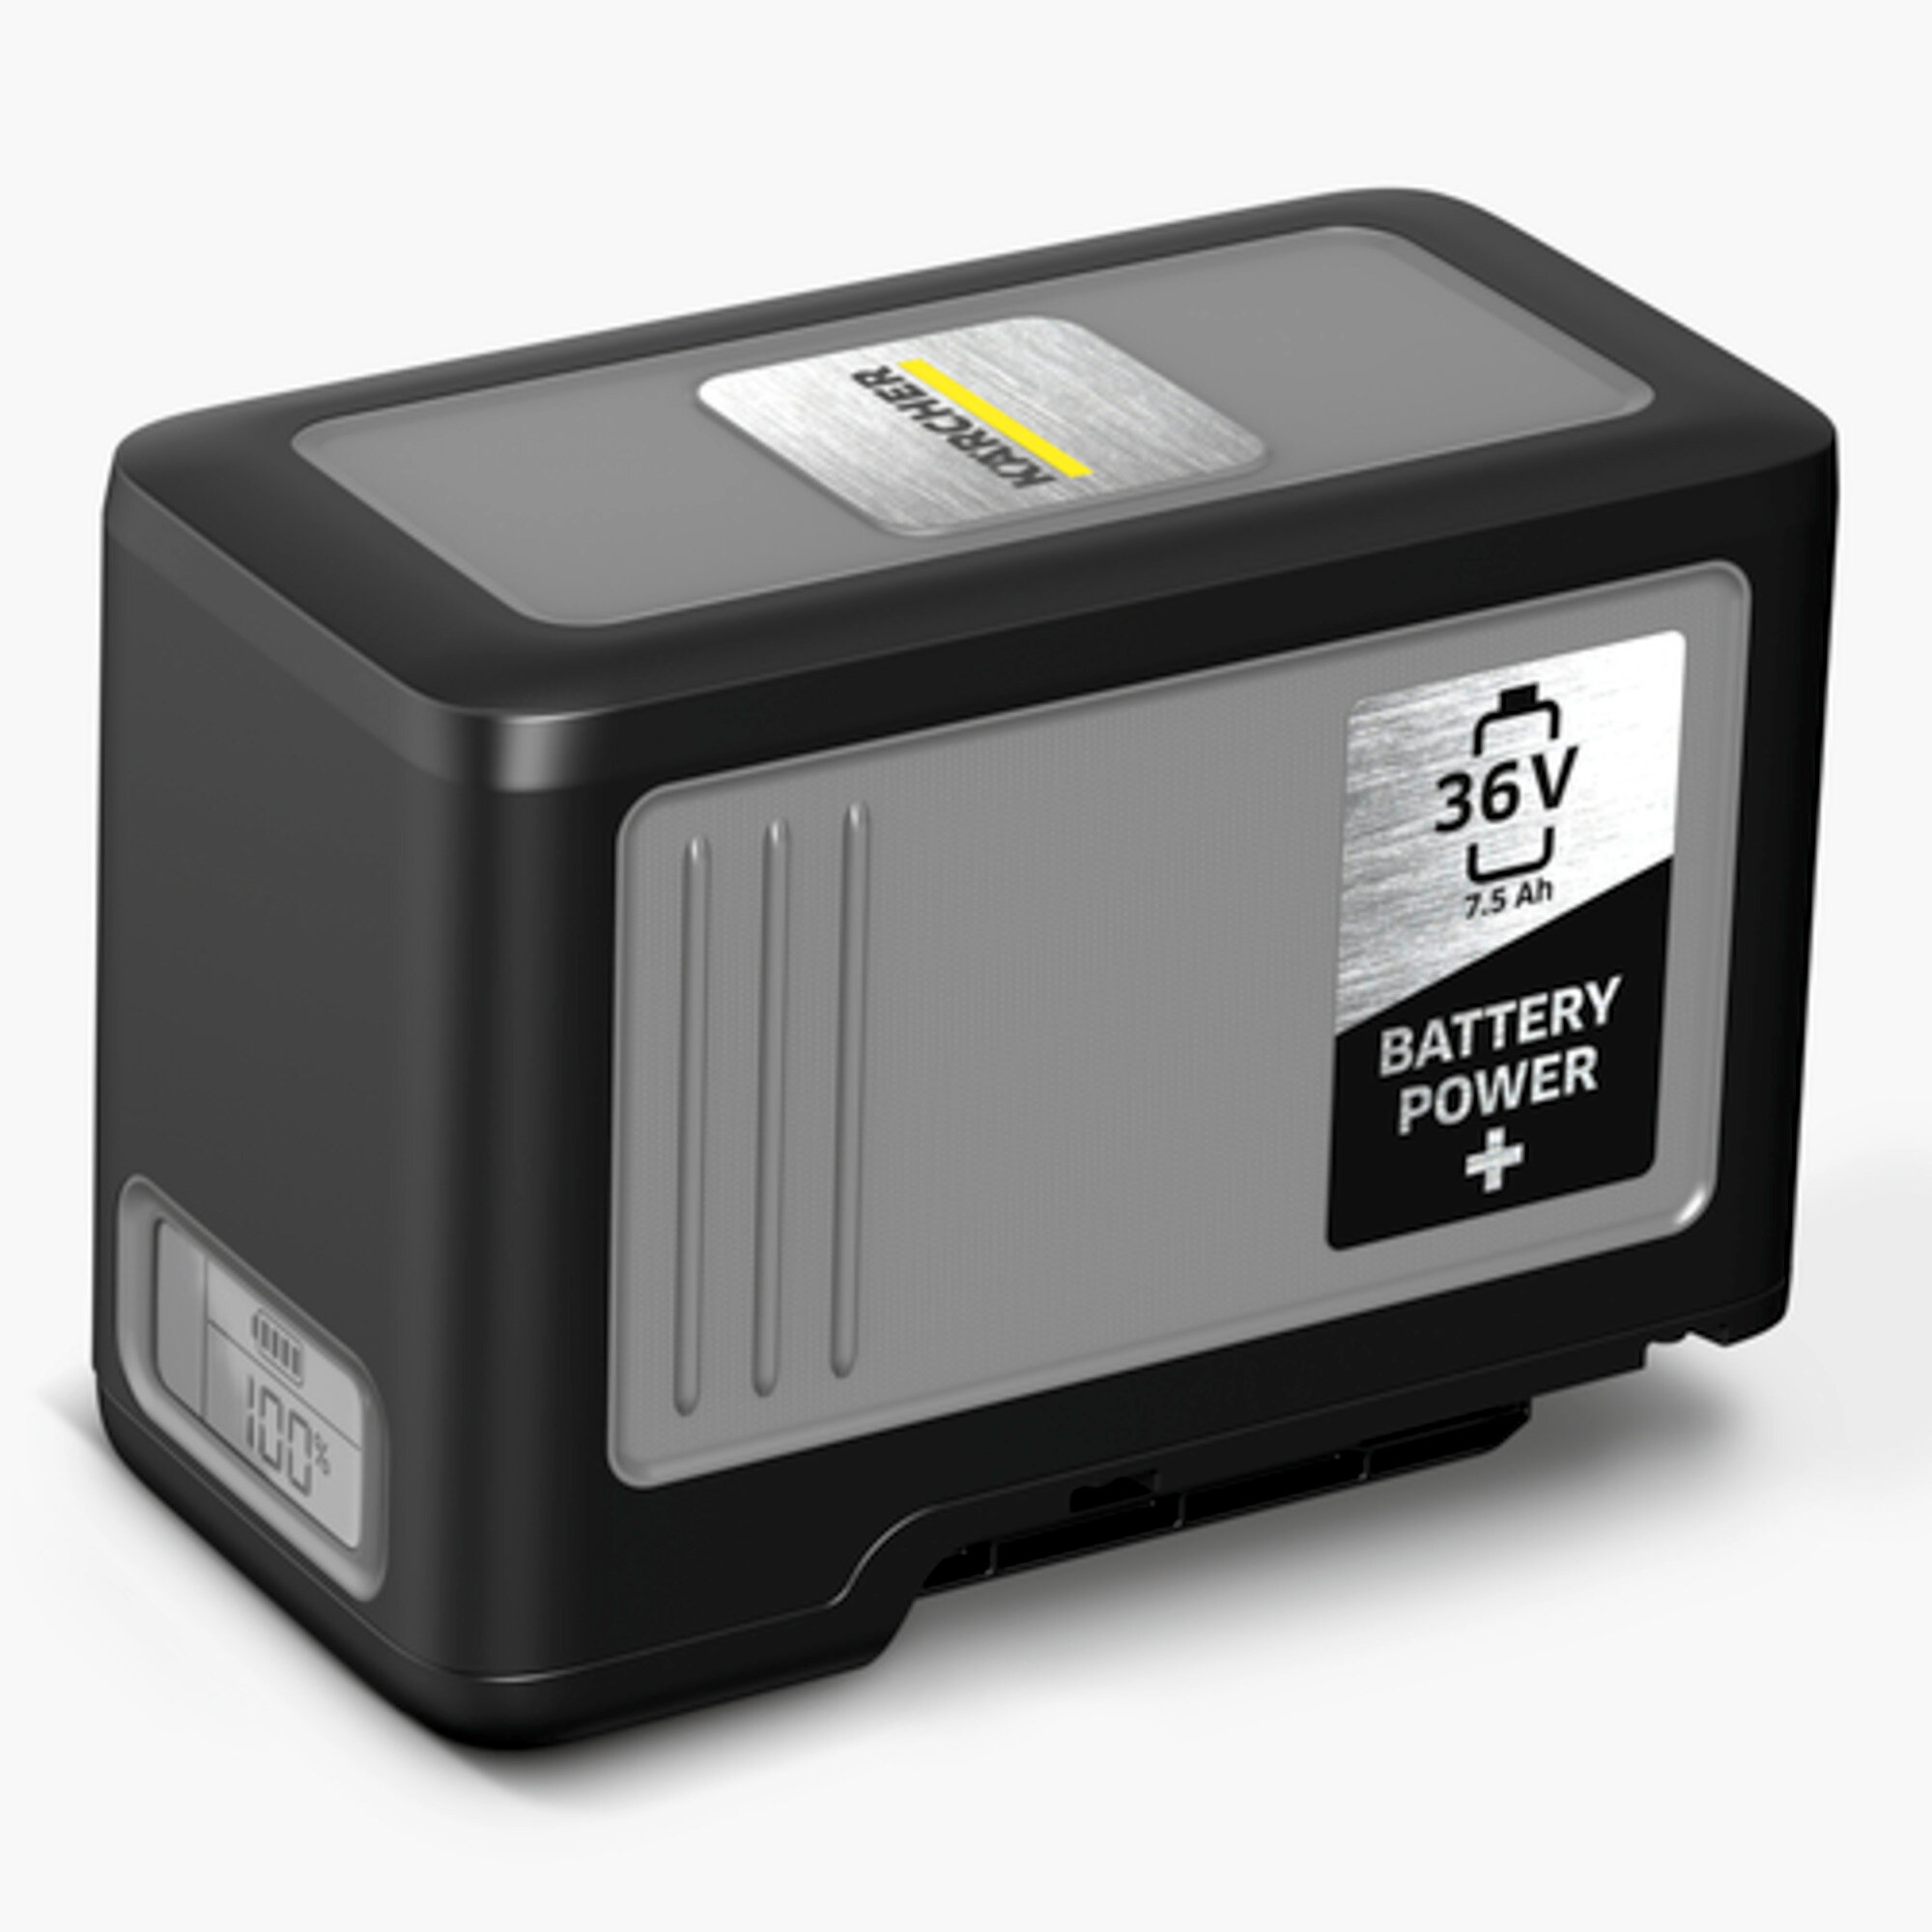 Lava-aspiradores a batería Puzzi 9/1 Bp Adv: Potente batería Kärcher Battery Power+ de 36 V